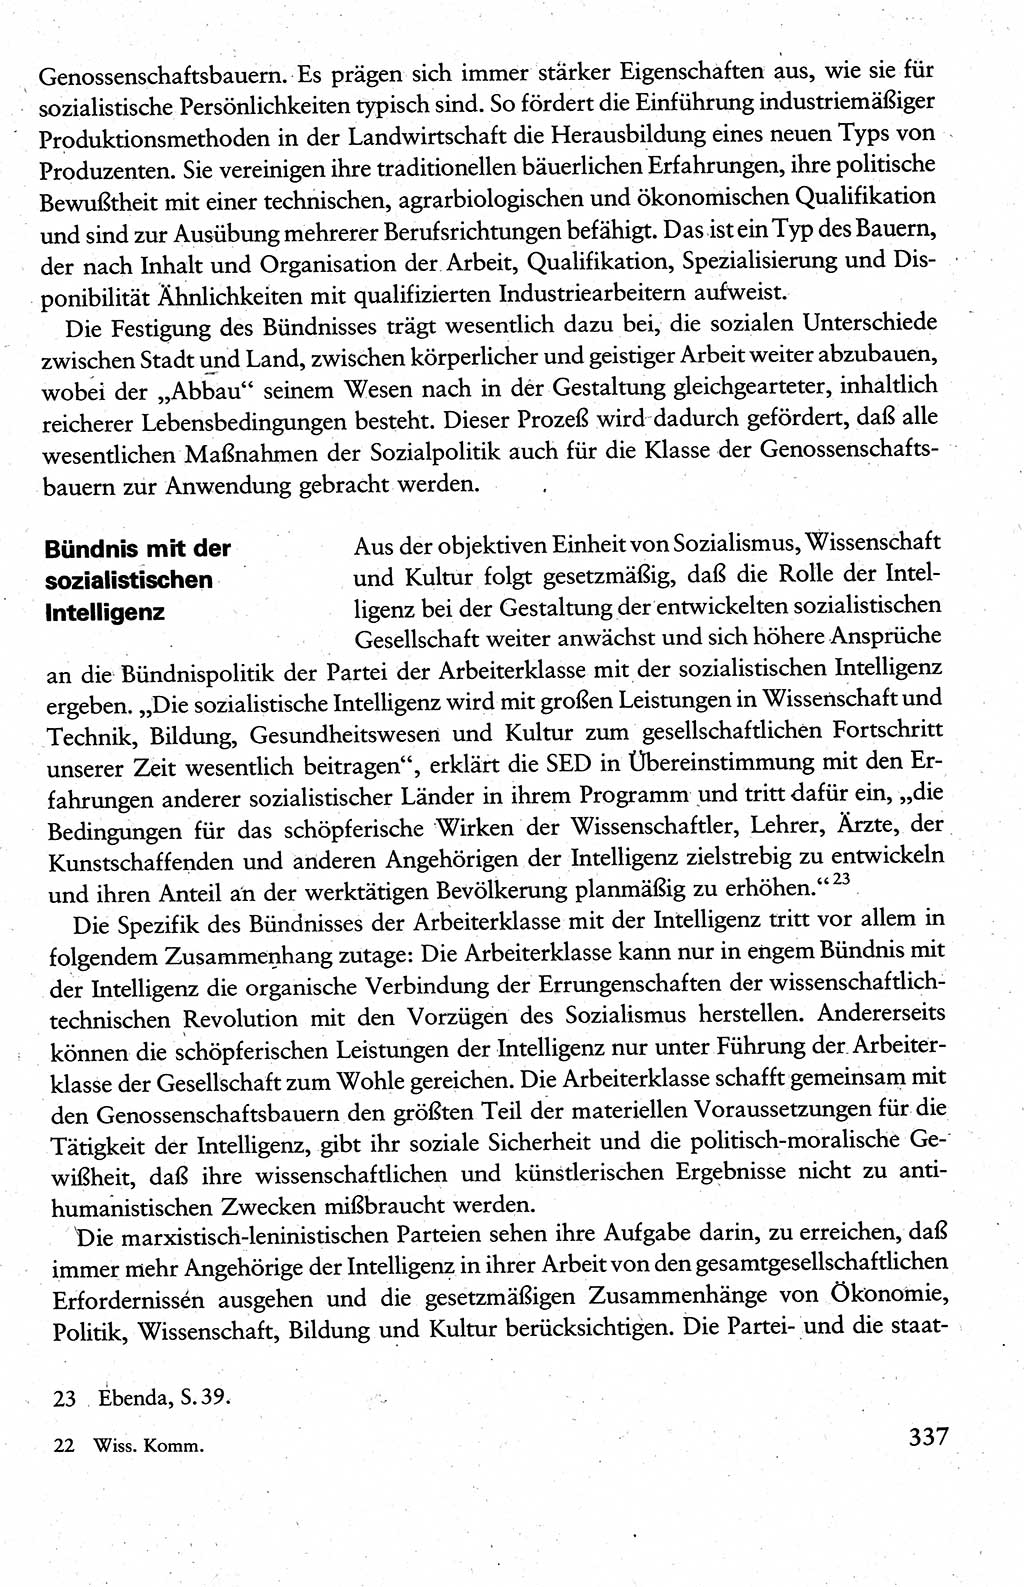 Wissenschaftlicher Kommunismus [Deutsche Demokratische Republik (DDR)], Lehrbuch für das marxistisch-leninistische Grundlagenstudium 1983, Seite 337 (Wiss. Komm. DDR Lb. 1983, S. 337)